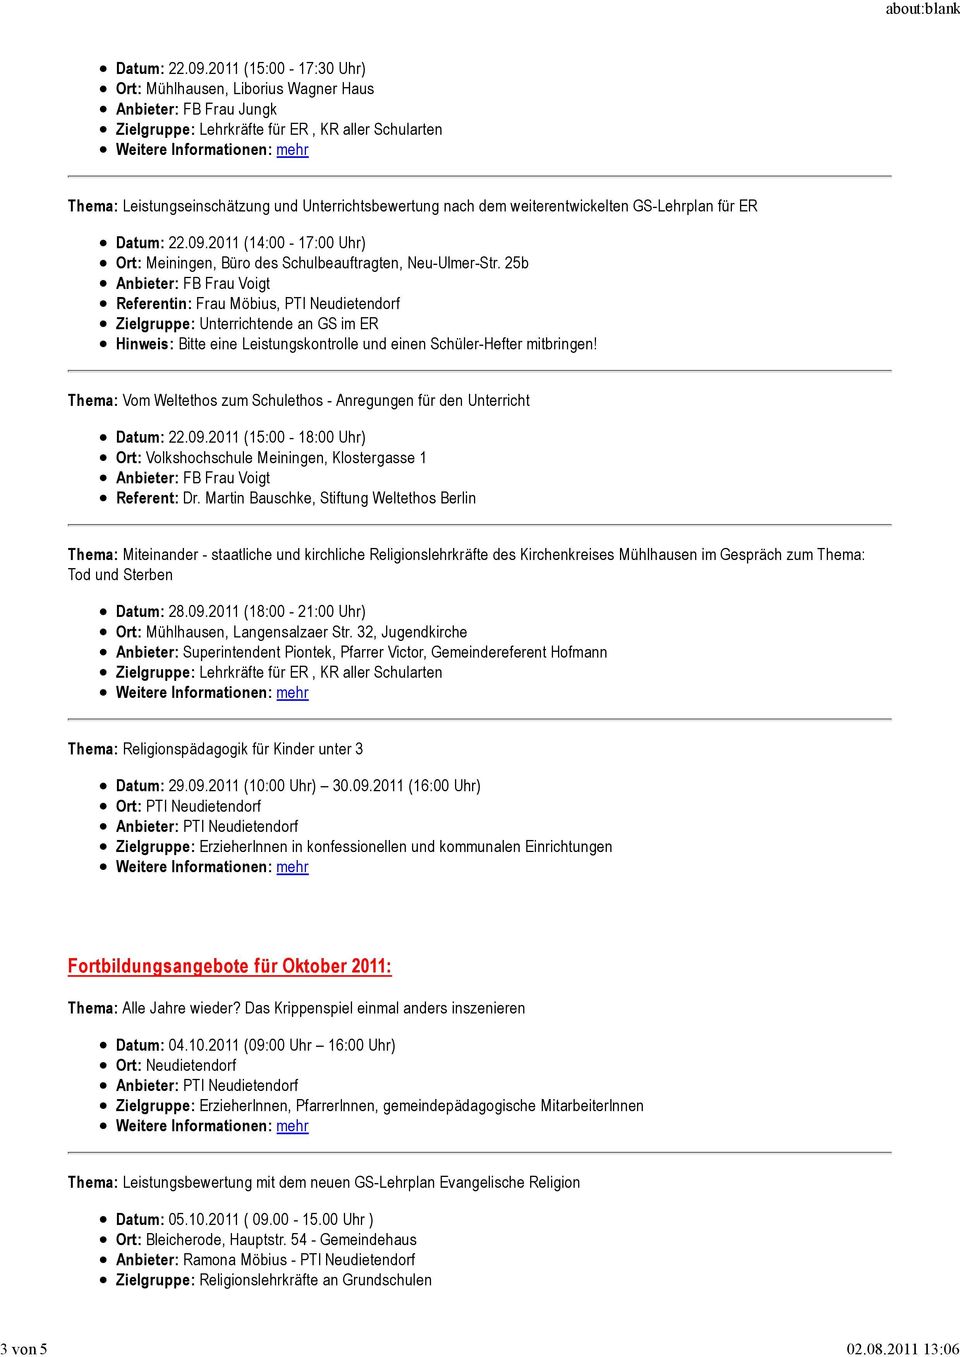 weiterentwickelten GS-Lehrplan für ER Datum: 22.09.2011 (14:00-17:00 Uhr) Ort: Meiningen, Büro des Schulbeauftragten, Neu-Ulmer-Str.